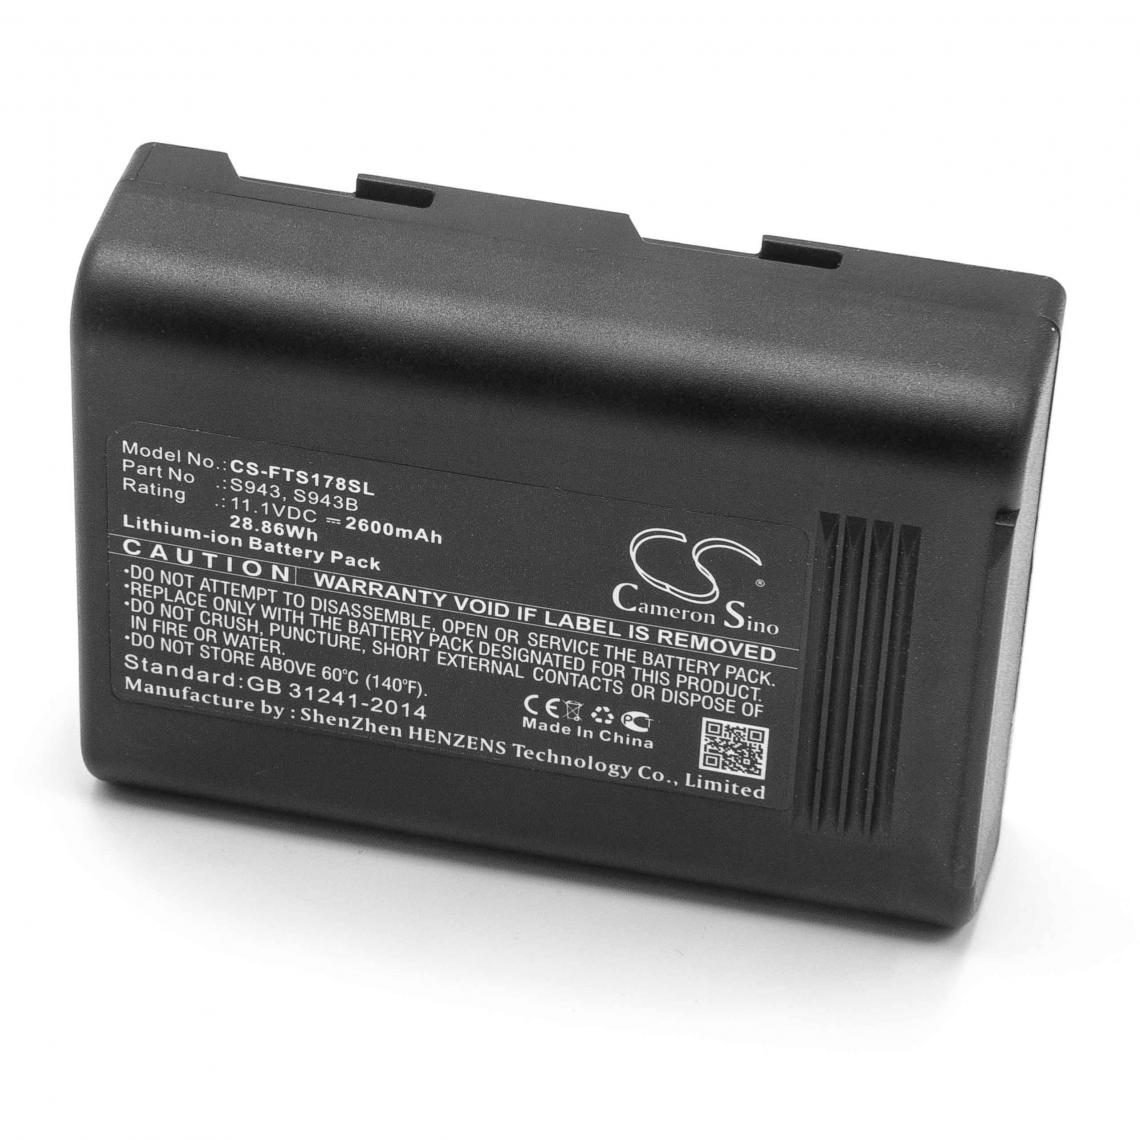 Vhbw - vhbw Batterie remplacement pour FITEL S943, S943B pour soudeuse (2600mAh, 11,1V, Li-ion) - Piles rechargeables